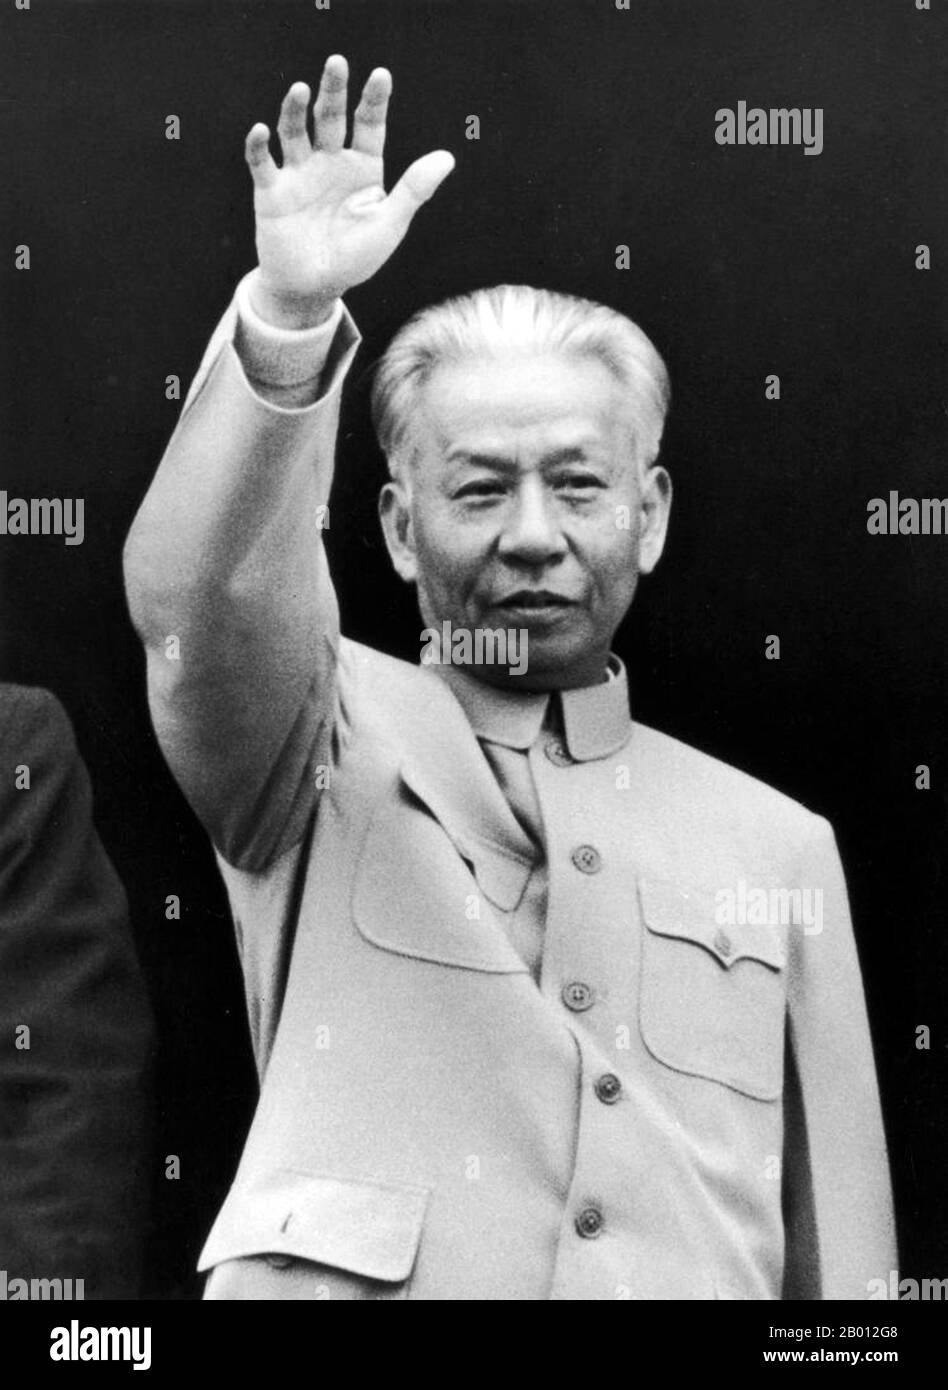 China: Liu Shaoqi (Liu Shao-ch'i, 1898-1969) Vorsitzender der Volksrepublik China (r. 1959-1968). Liu Shaoqi (Liu Shao-ch'i, 24. November 1898 – 12. November 1969) war ein chinesischer Revolutionär, Staatsmann und Theoretiker. Er war vom 27. April 1959 bis zum 31. Oktober 1968 Vorsitzender der Volksrepublik China, Chinas Staatsoberhaupt, während dessen er die Politik des wirtschaftlichen Wiederaufbaus in China umsetzte. Er fiel in den späten 1960er Jahren während der Kulturrevolution wegen seiner wahrgenommenen 'rechten' Ansichten aus der Gunst und, so wird es theoretisch, weil Mao Liu als Bedrohung seiner Macht betrachtete Stockfoto